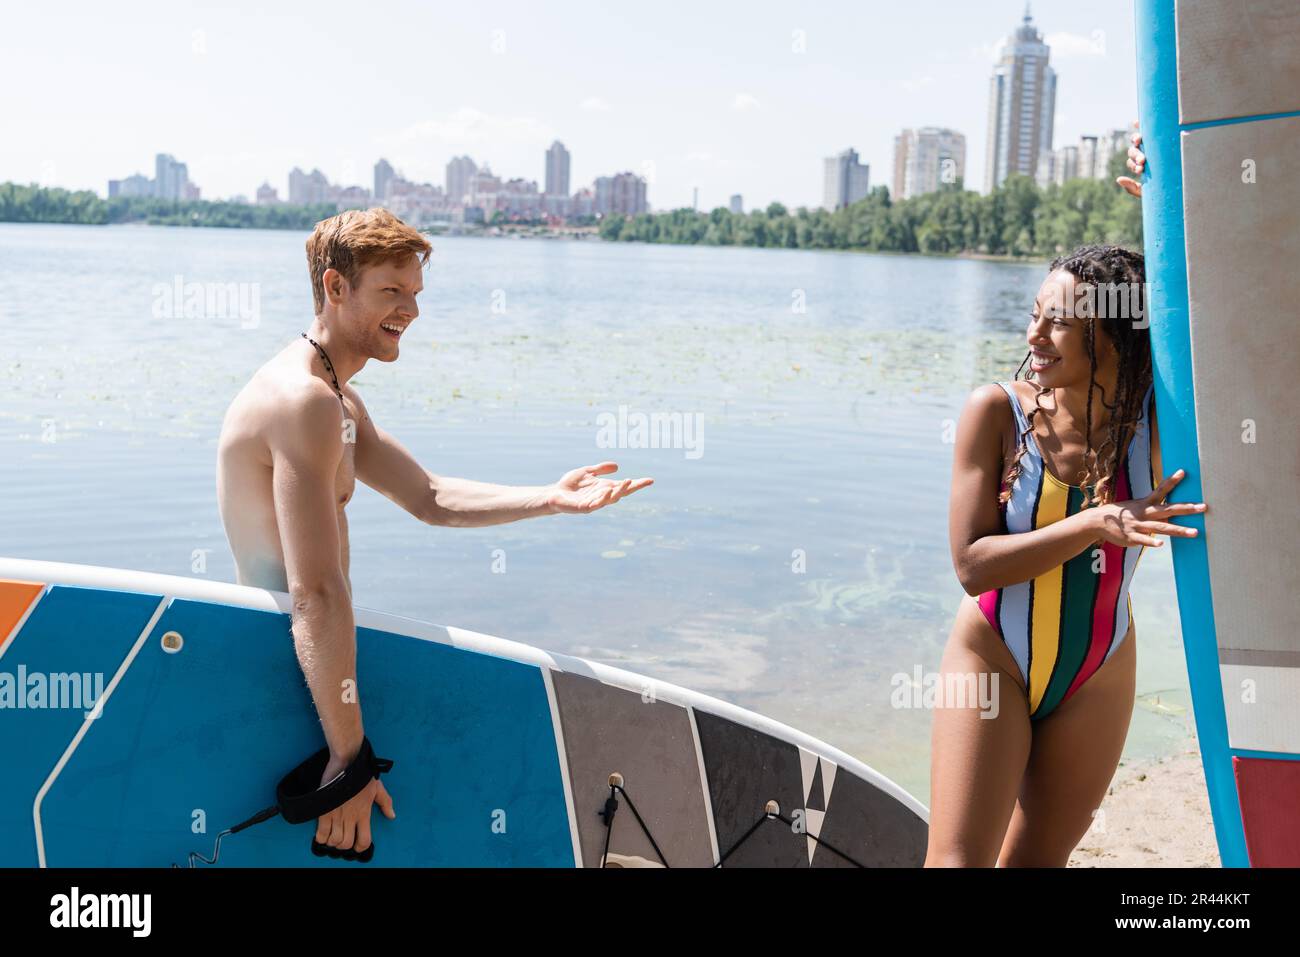 Glücklicher rothaariger Mann mit Sup-Board und Gespräch mit einer bezaubernden afroamerikanischen Frau in farbenfrohen Badeanzügen in der Nähe des Sees und der Stadtlandschaft im Hintergrund Stockfoto